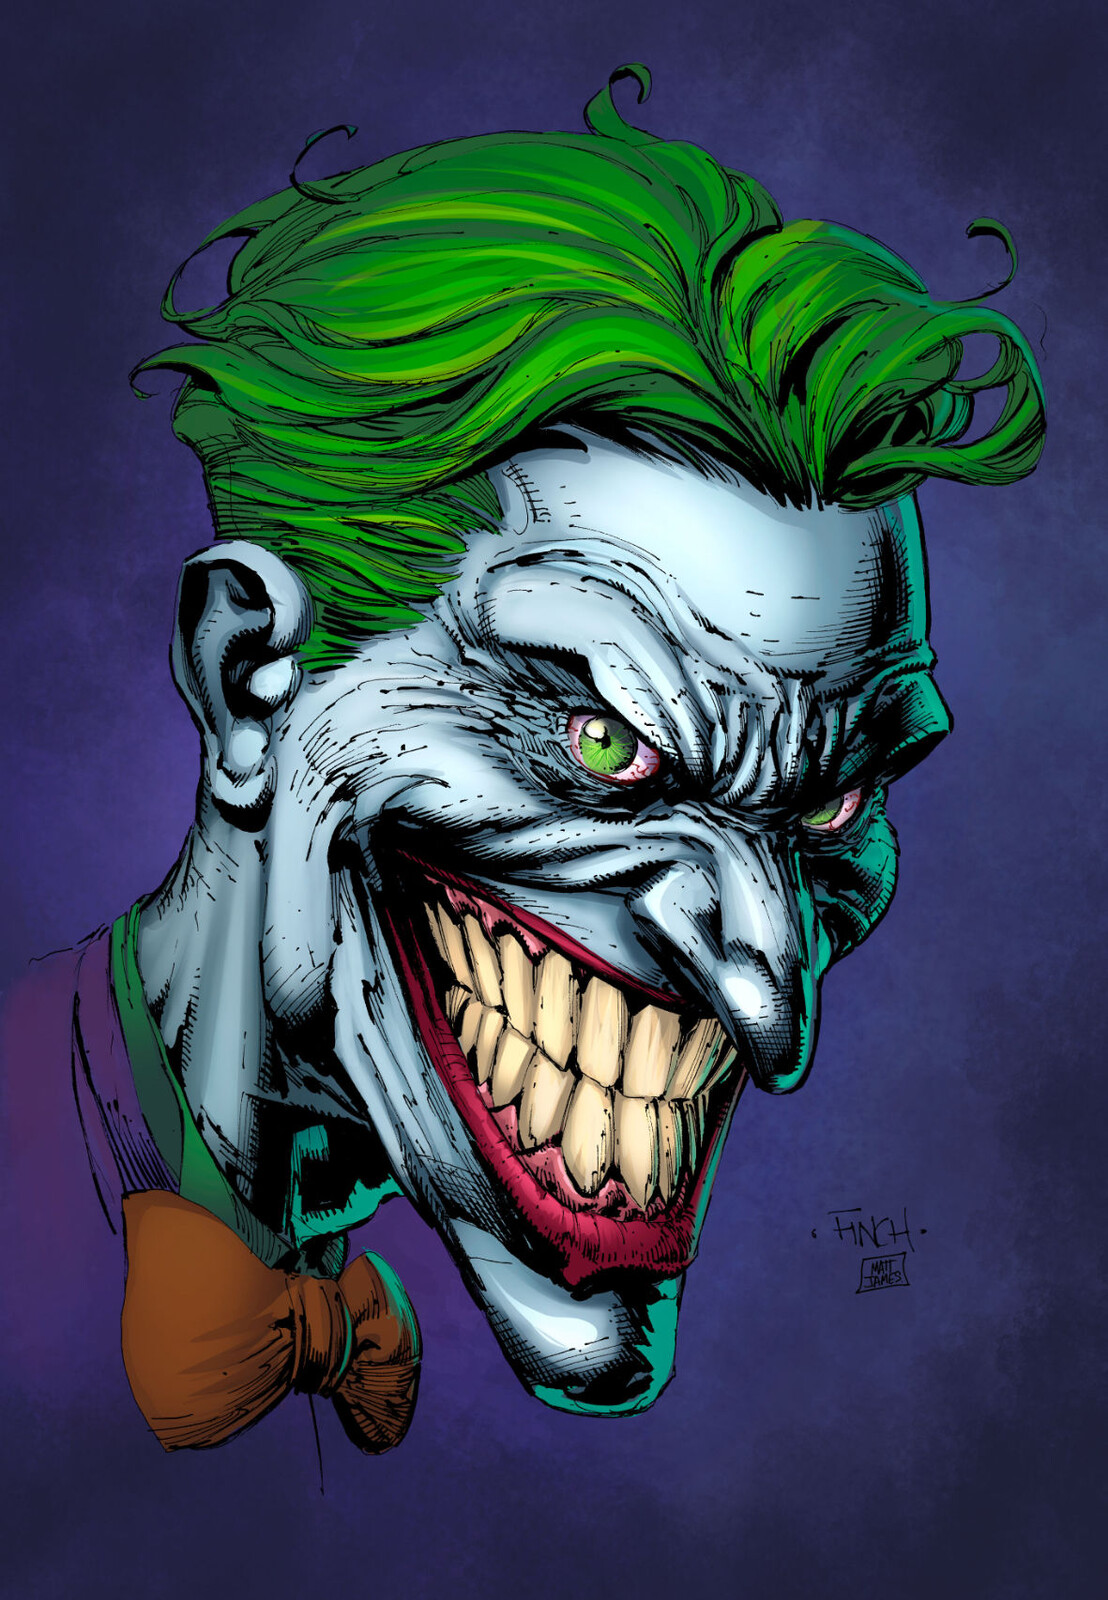 Matt James - The Joker